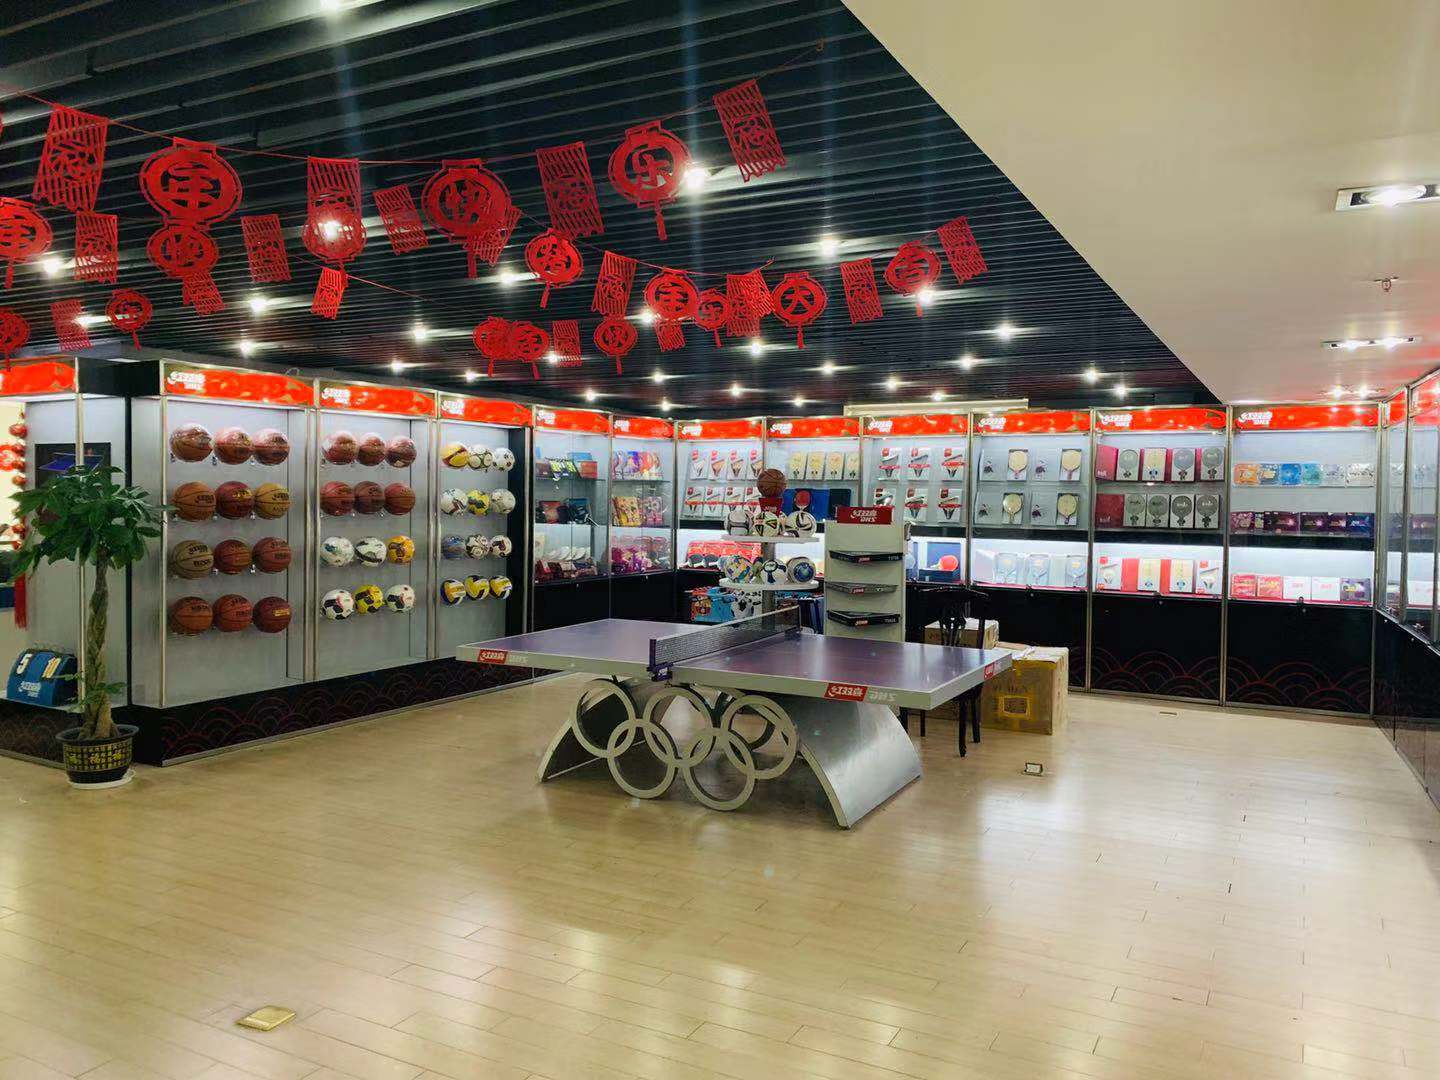 上海梁威实业有限公司经营红双喜专卖店,对消费者和企业来说,是一个